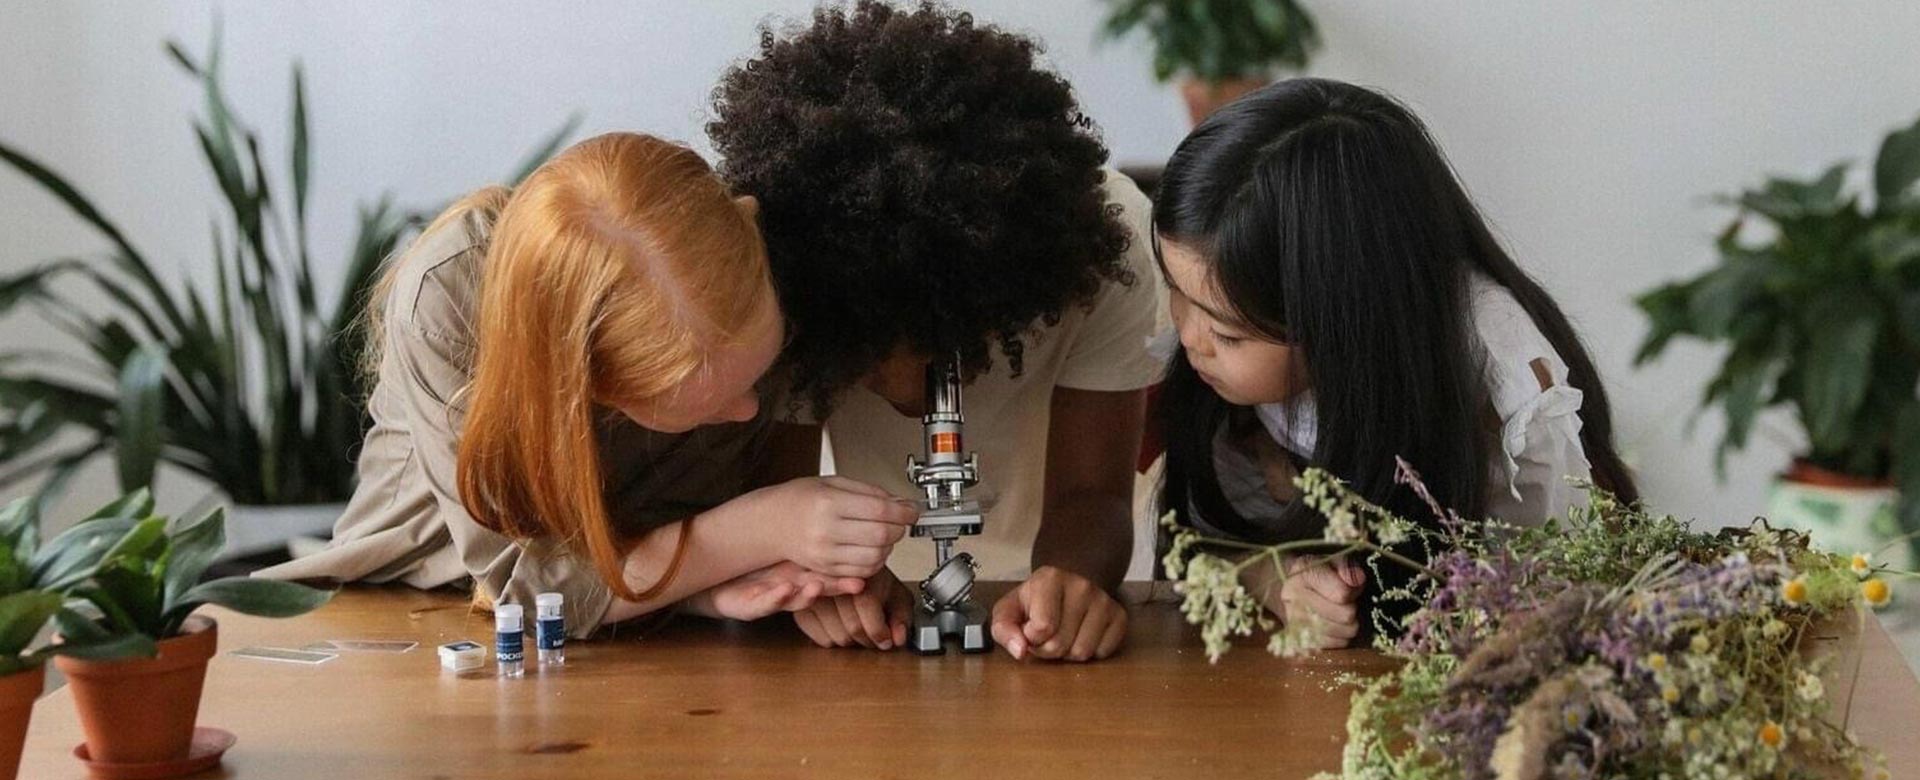 Bambine con microscopio